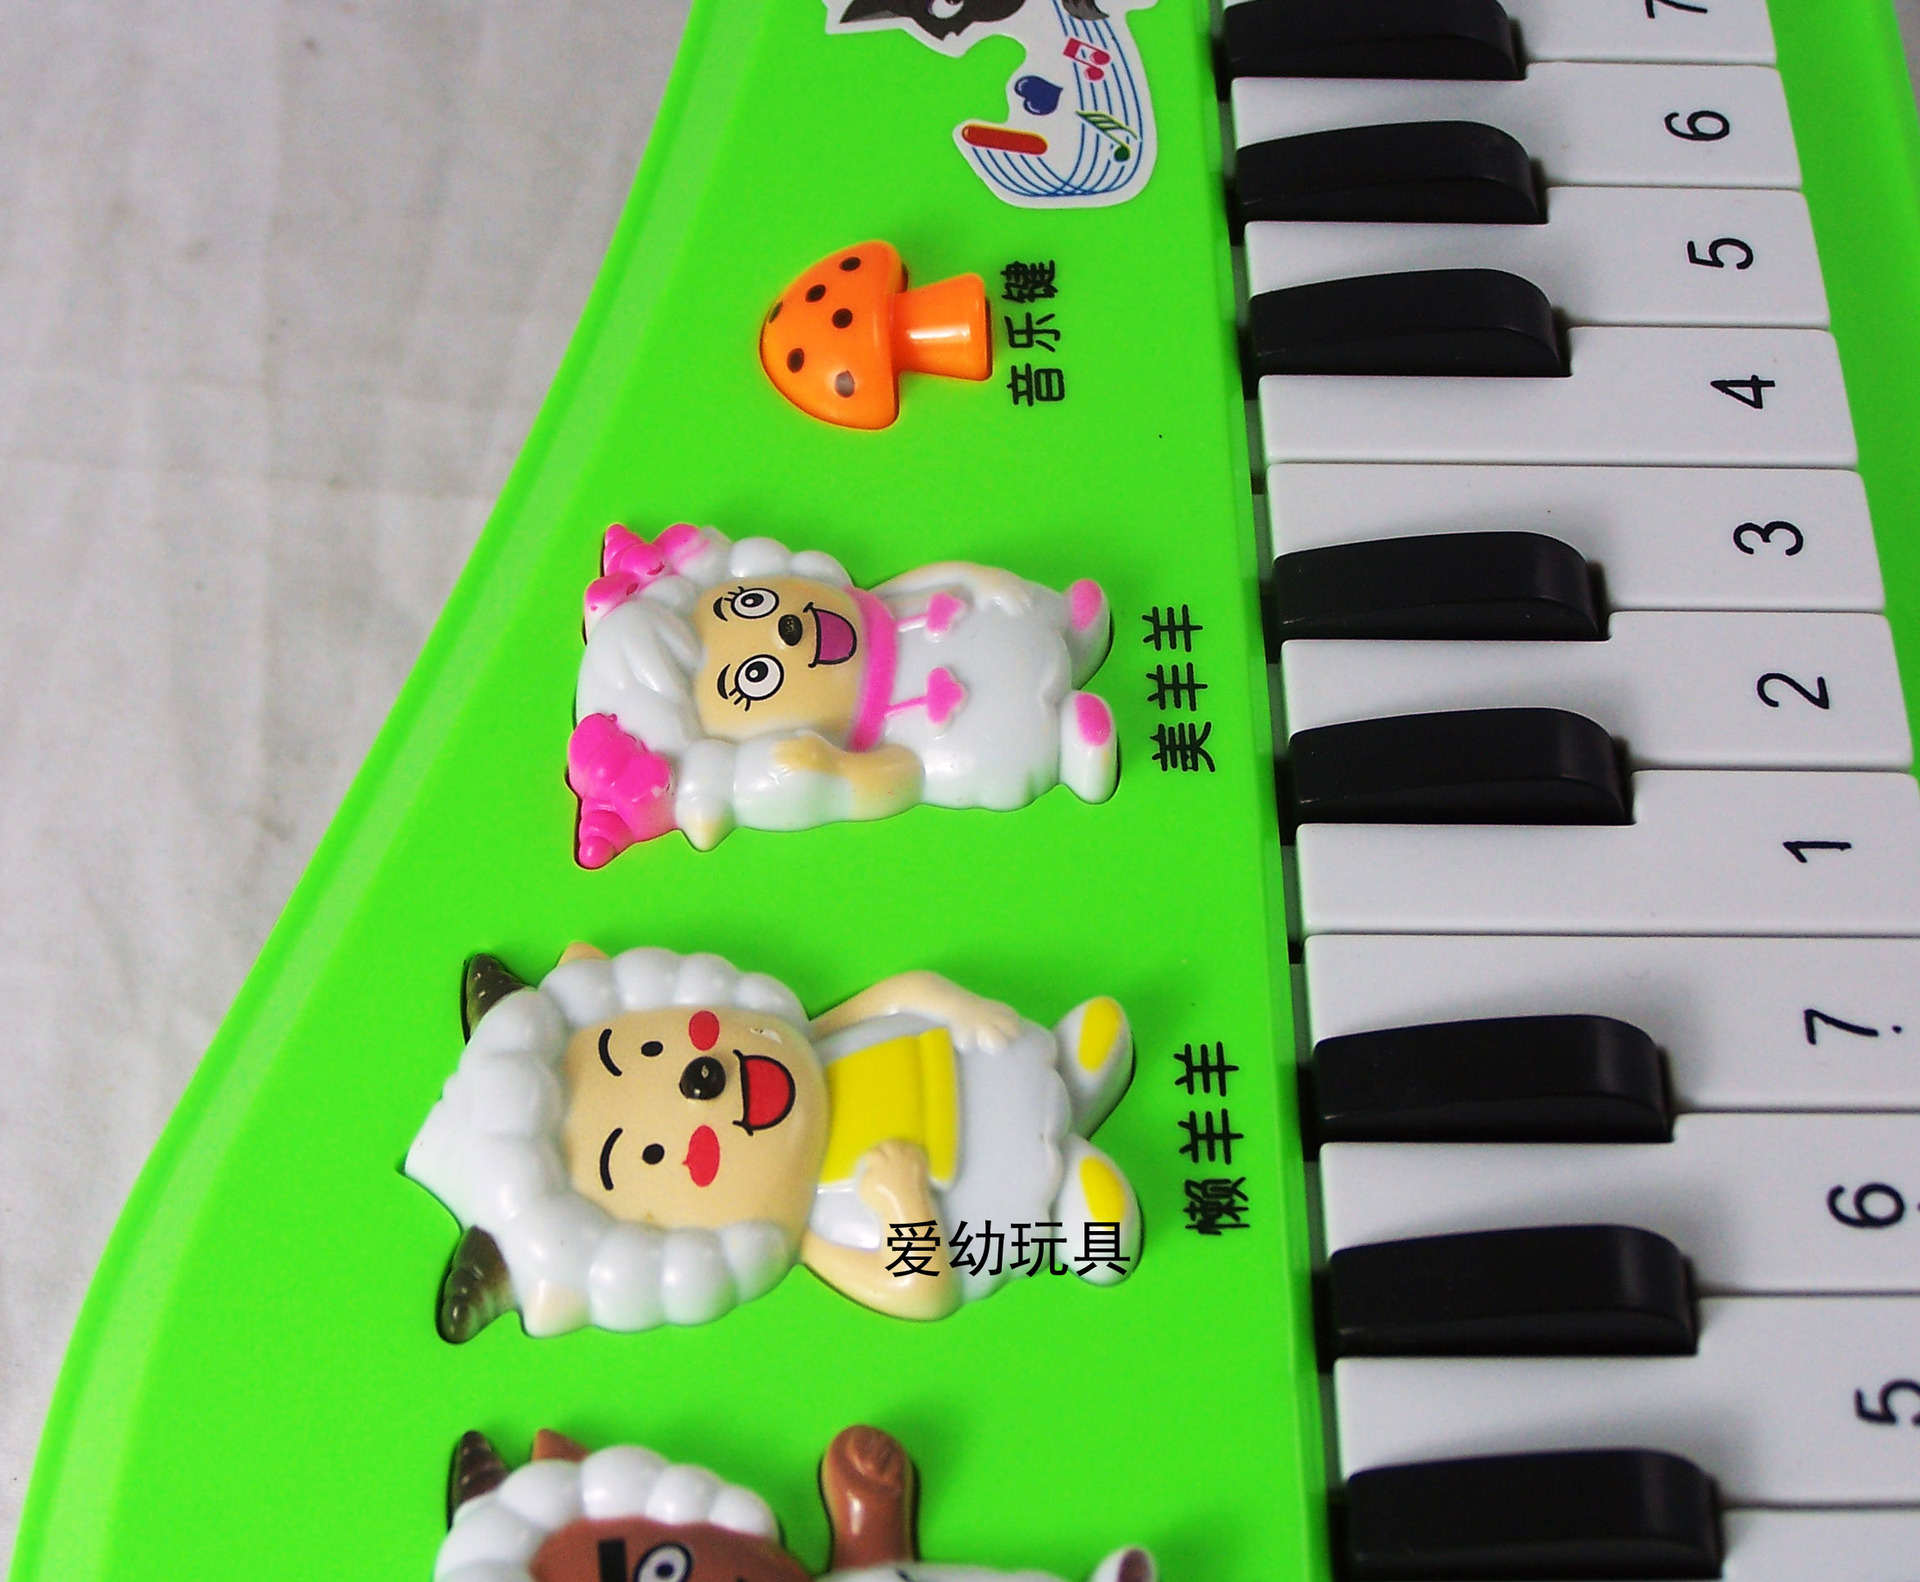 【爱幼玩具】热卖喜洋洋电子琴 儿童玩具 益智玩具 电子琴批发